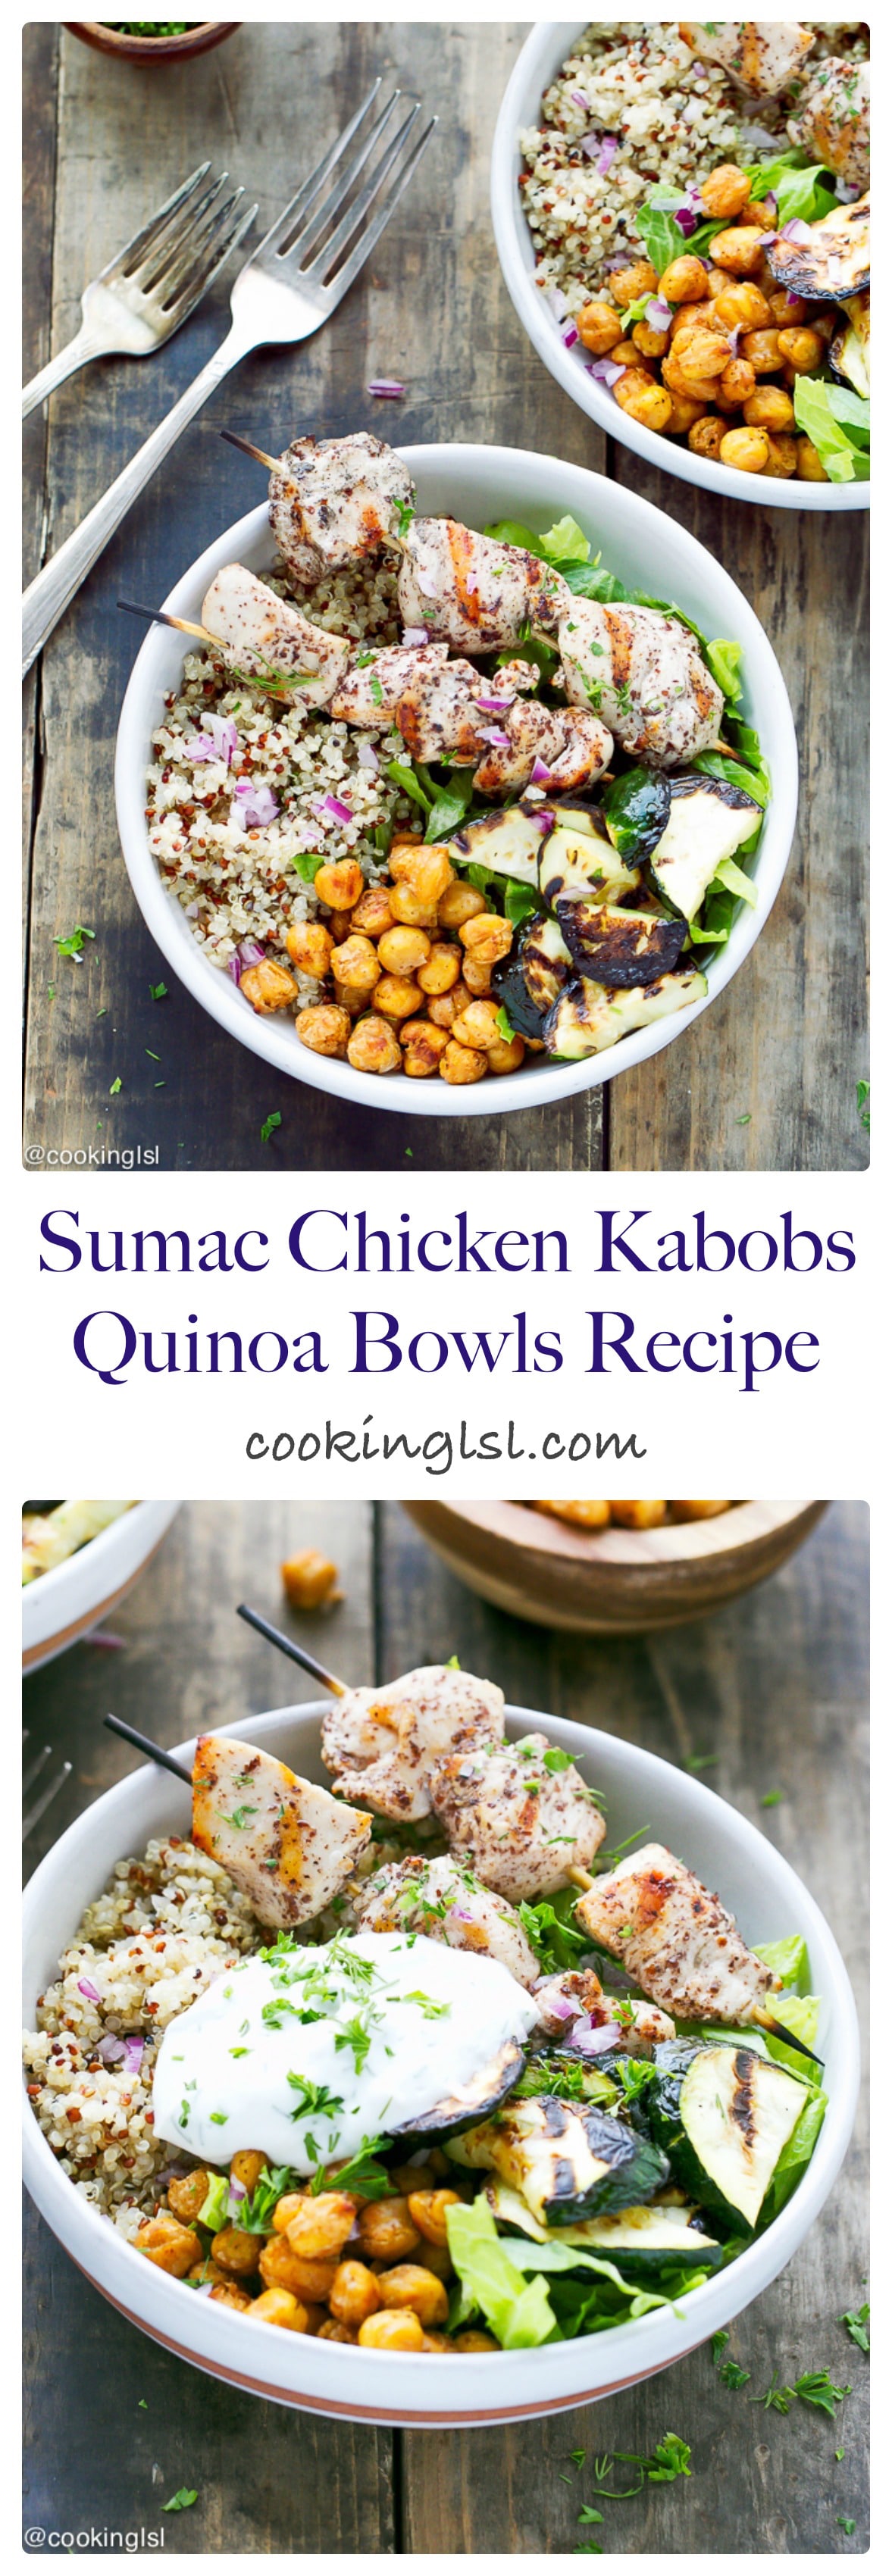 sumac-chicken-skewers-quinoa-bowls